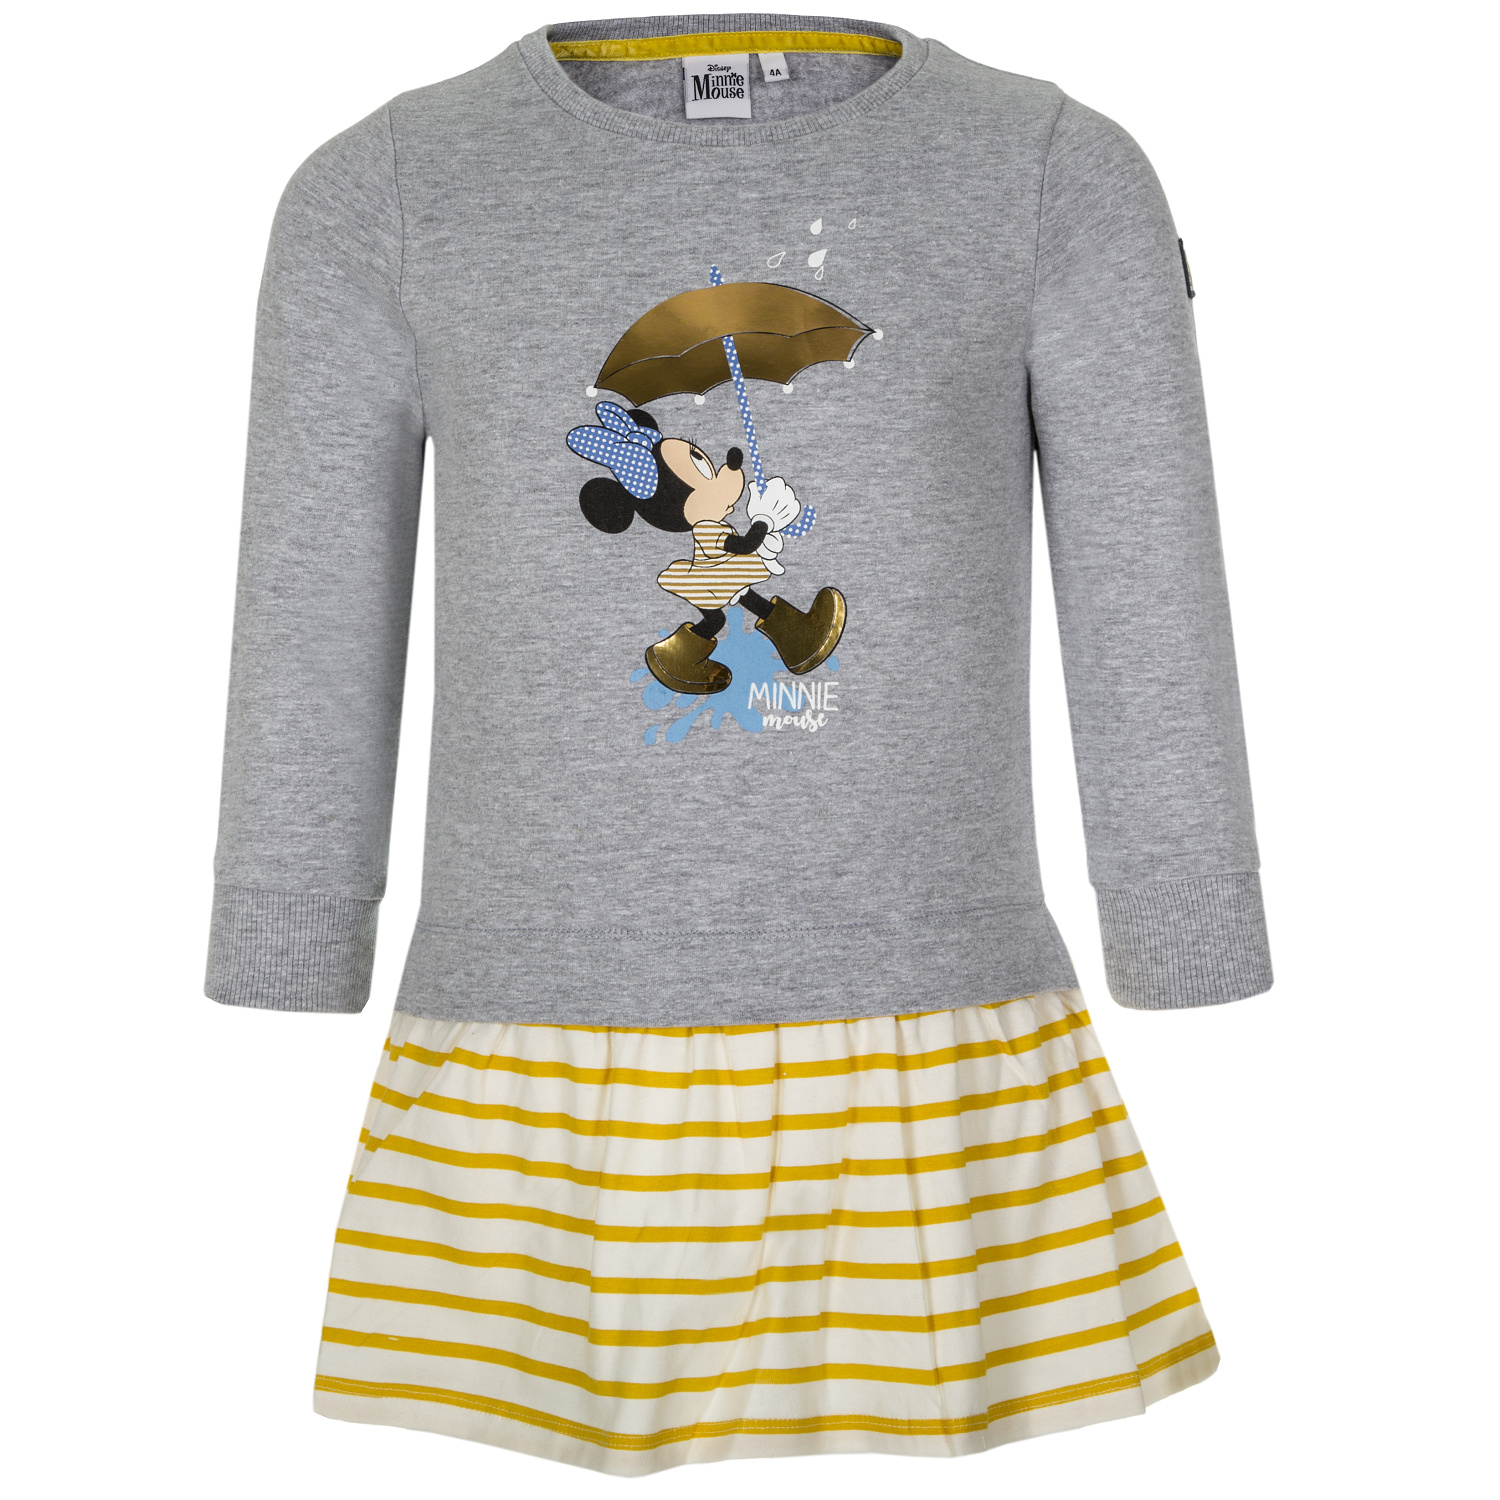 Minnie Mouse - licence Dívčí šaty - Minnie Mouse VH1078, světle šedý melír Barva: Šedá, Velikost: 128